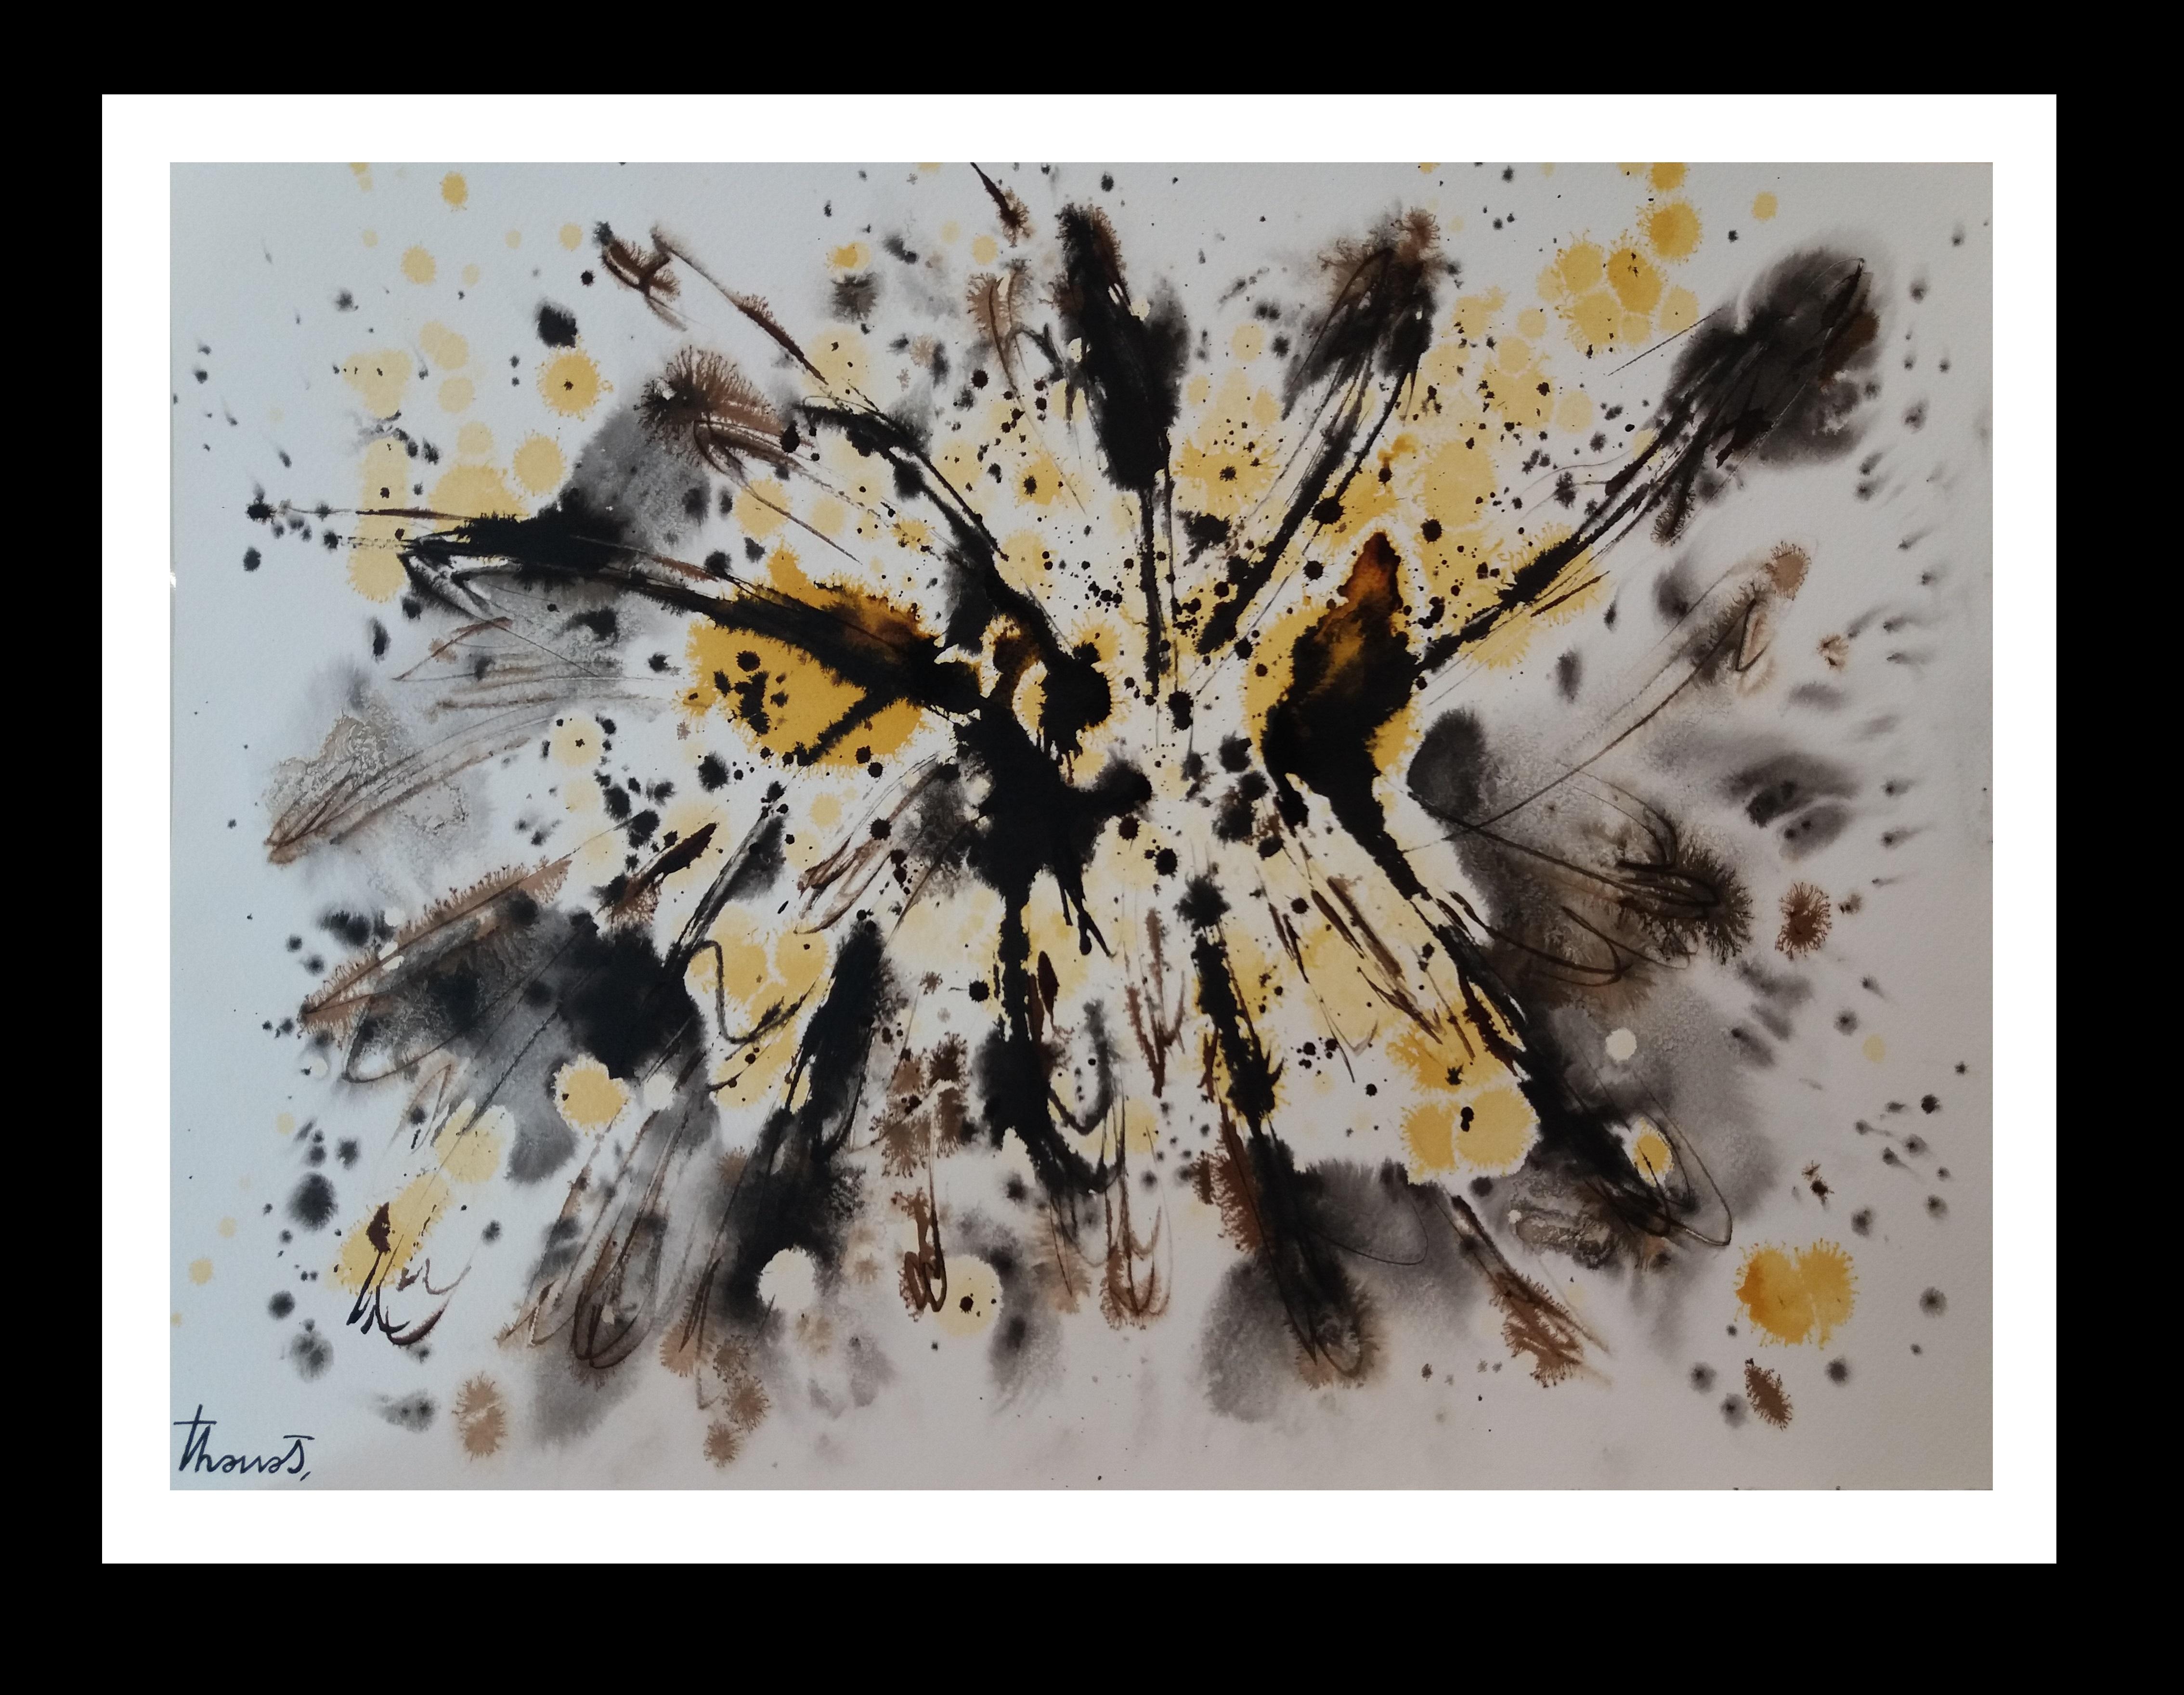 Abstract Painting Josep THARRATS - Tharrats  Noir  abstraite jaune d'origine  Peinture sur papier acrylique